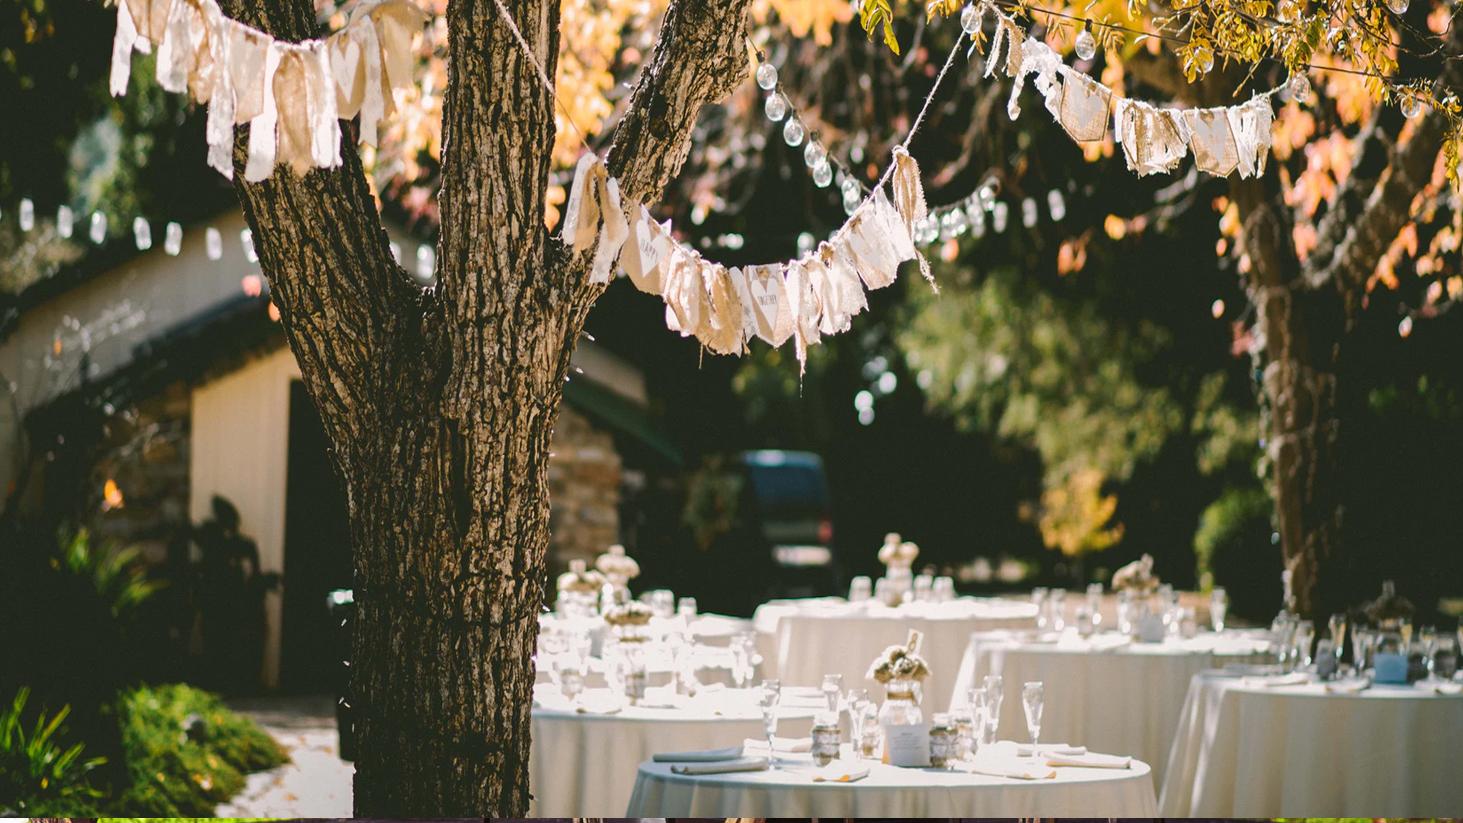 Find your ideal Garden Wedding Venue in Sydney